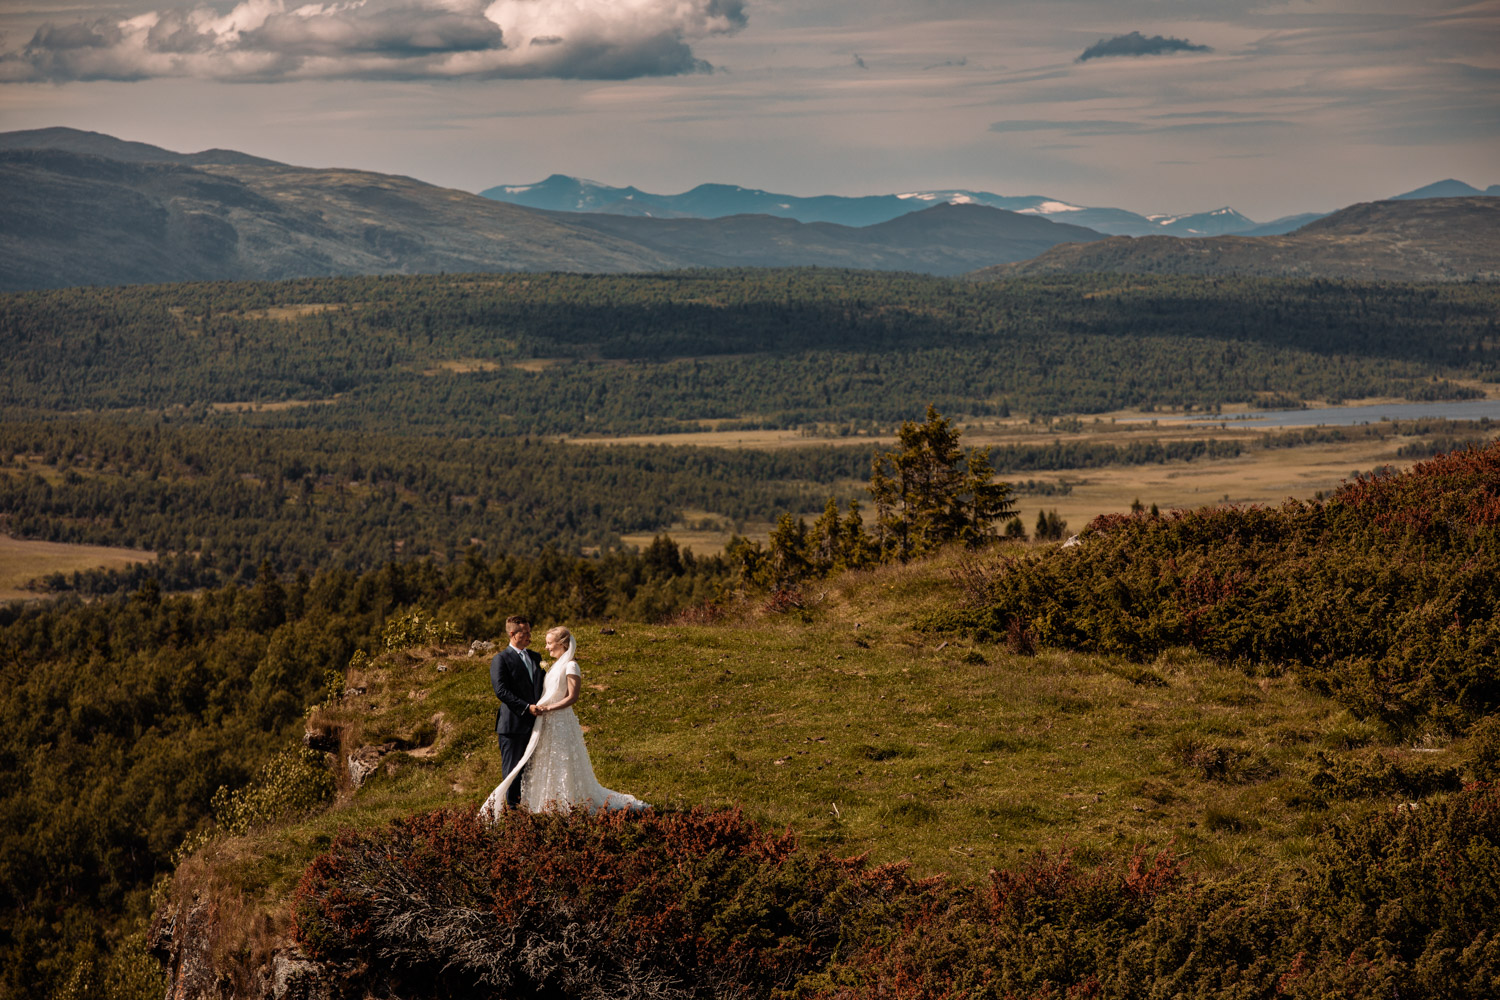 Bryllupsfotografering i Gudbrandsdalen